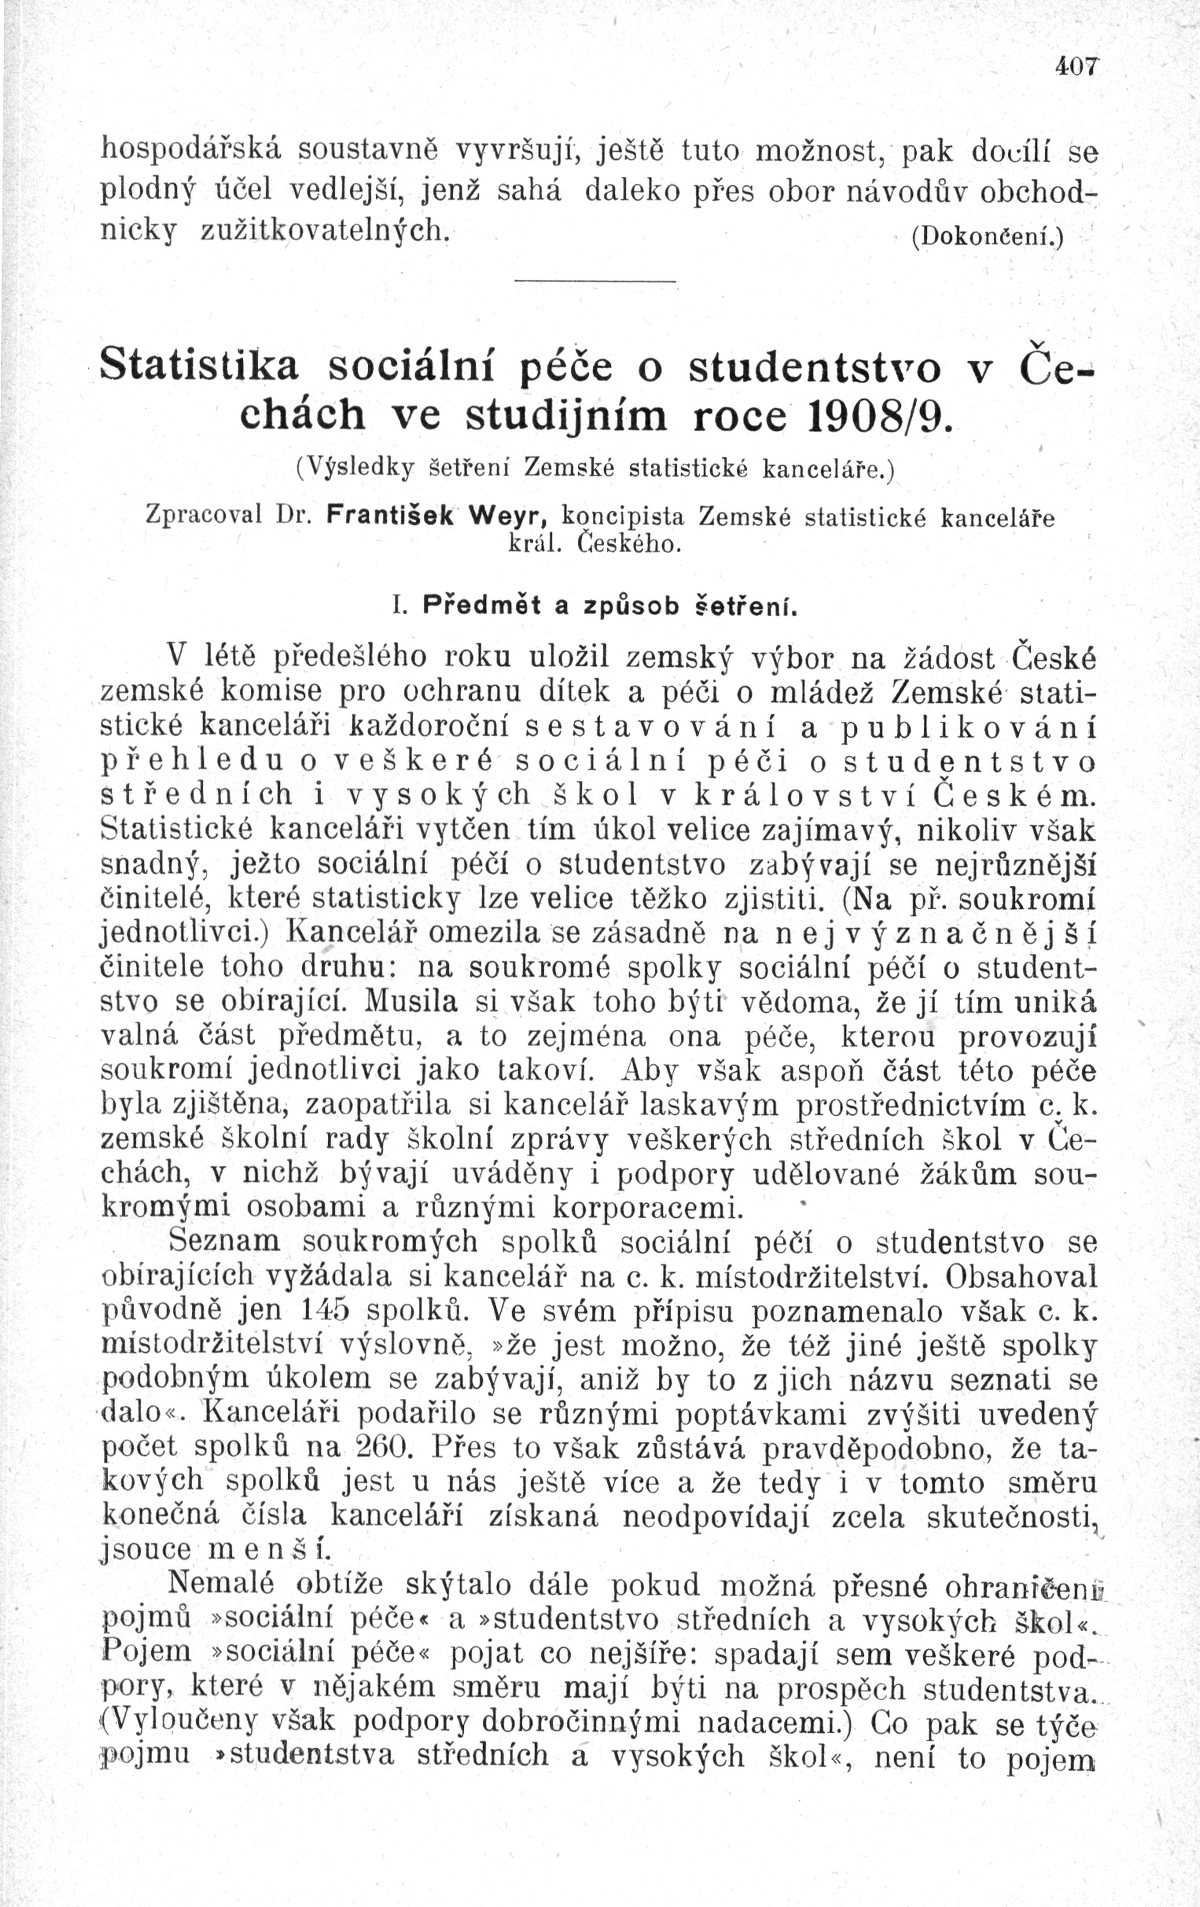 Statistika sociální péče o studentstvo v Čechách ve studijním roce 1908/09